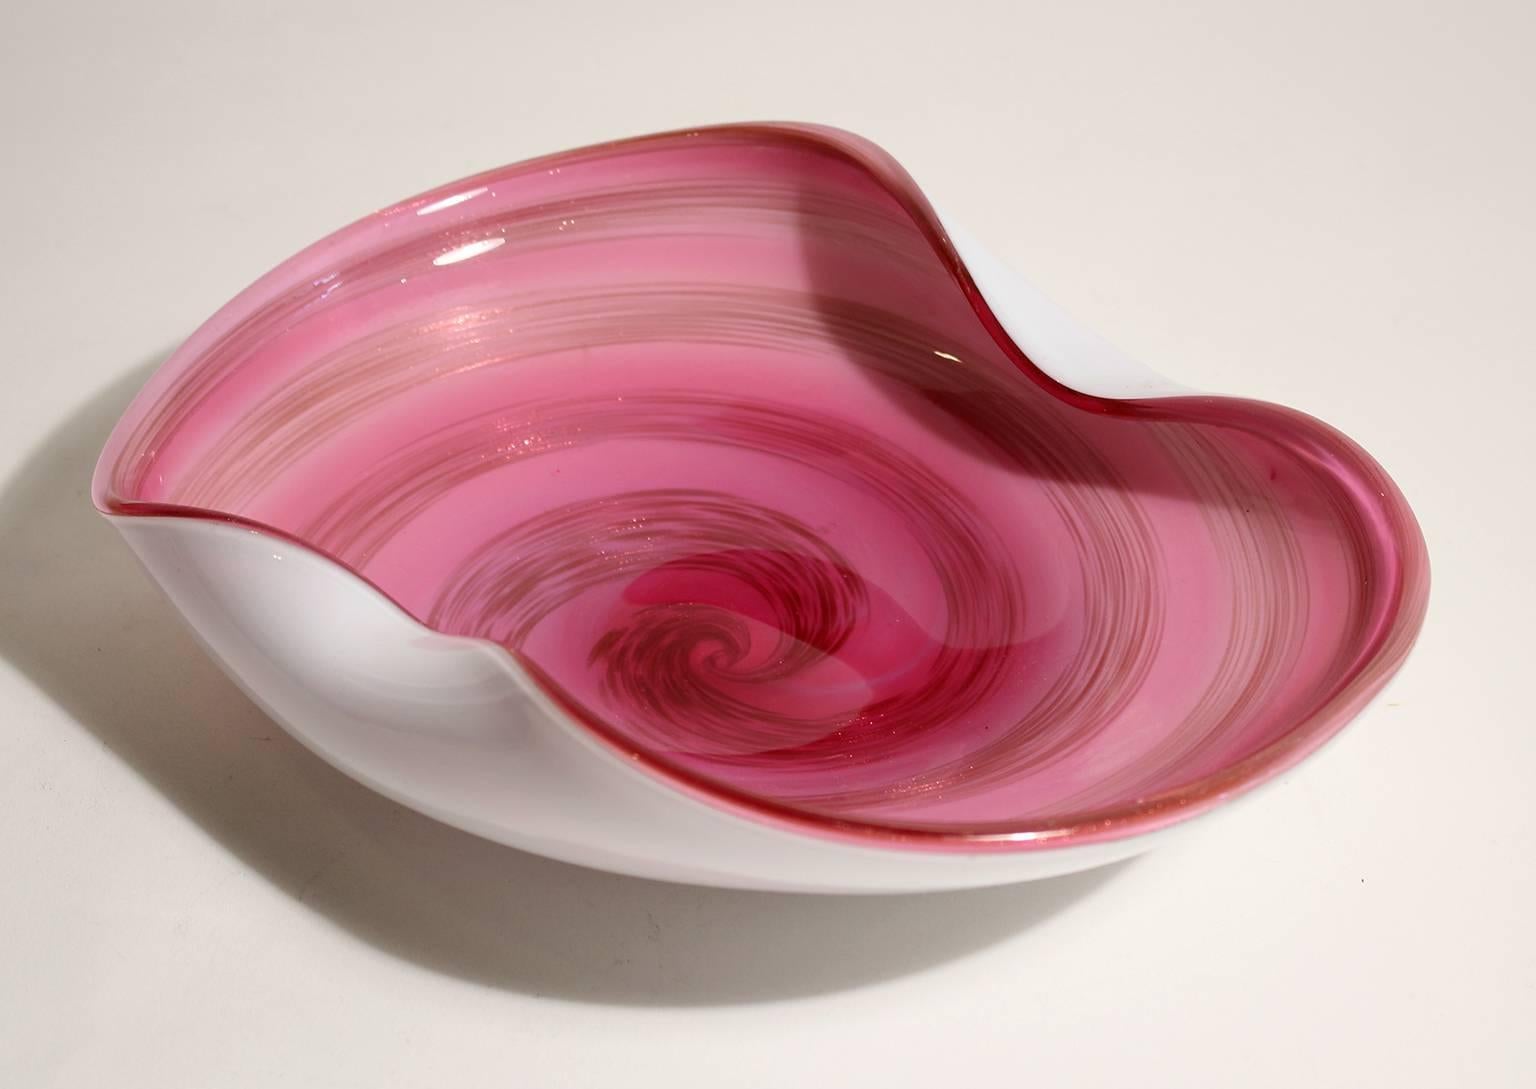 Schöne gefaltete Kante rosa und gold gesprenkelt Kunstglas Mittelstück Schüssel von Alfredo Barbini für Murano-Glas, ca. 1950er Jahre gemacht. Hergestellt in Italien. In ausgezeichnetem Zustand. Maße: 10 1/2